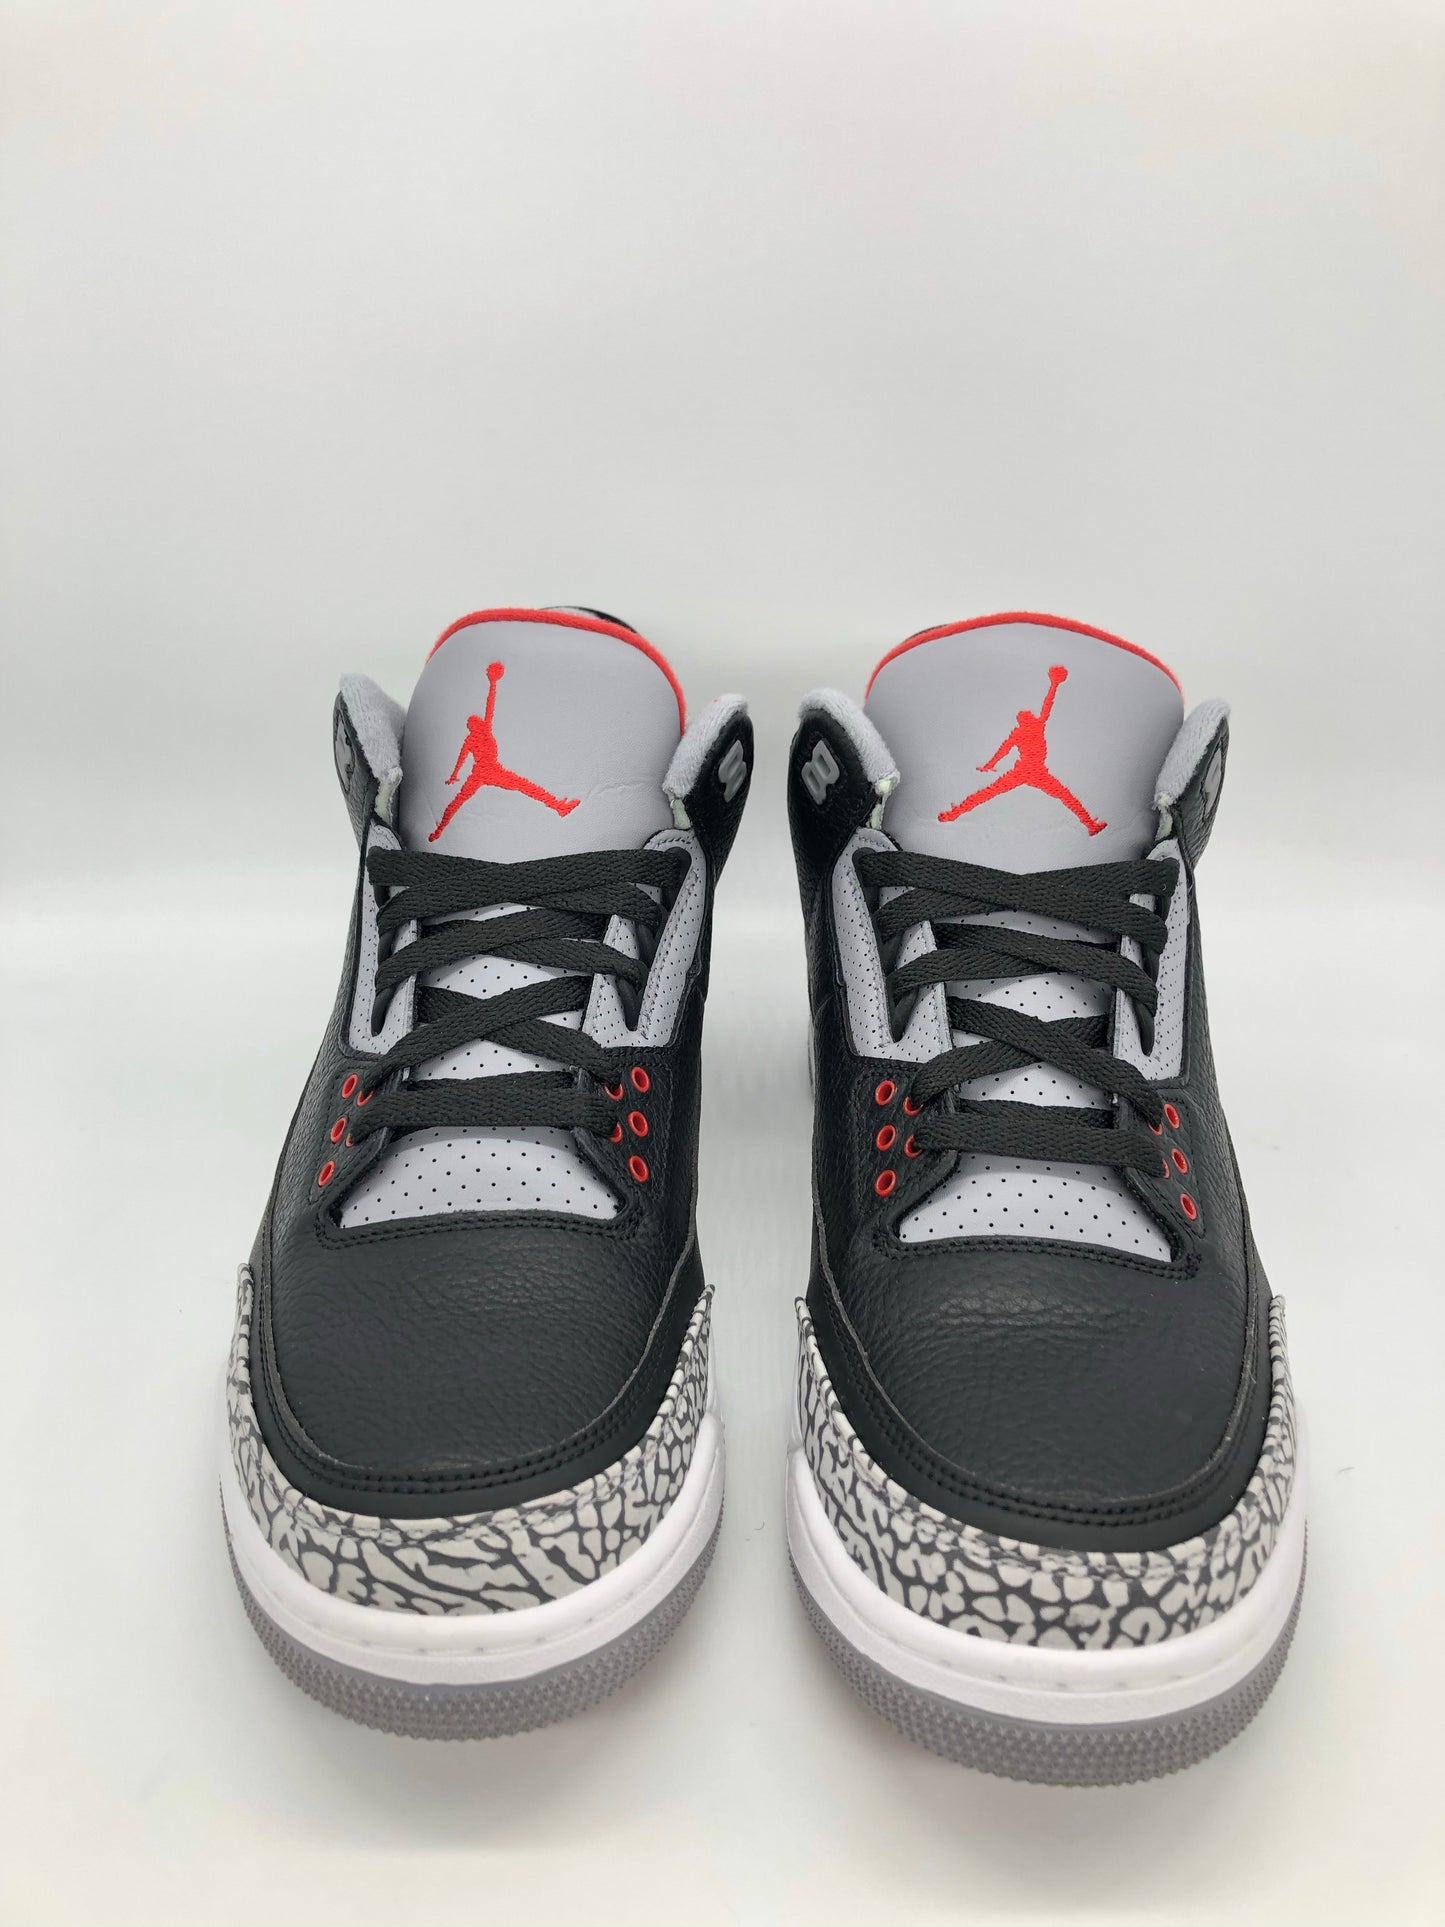 Jordan 3 Retro Black Cement (2018)